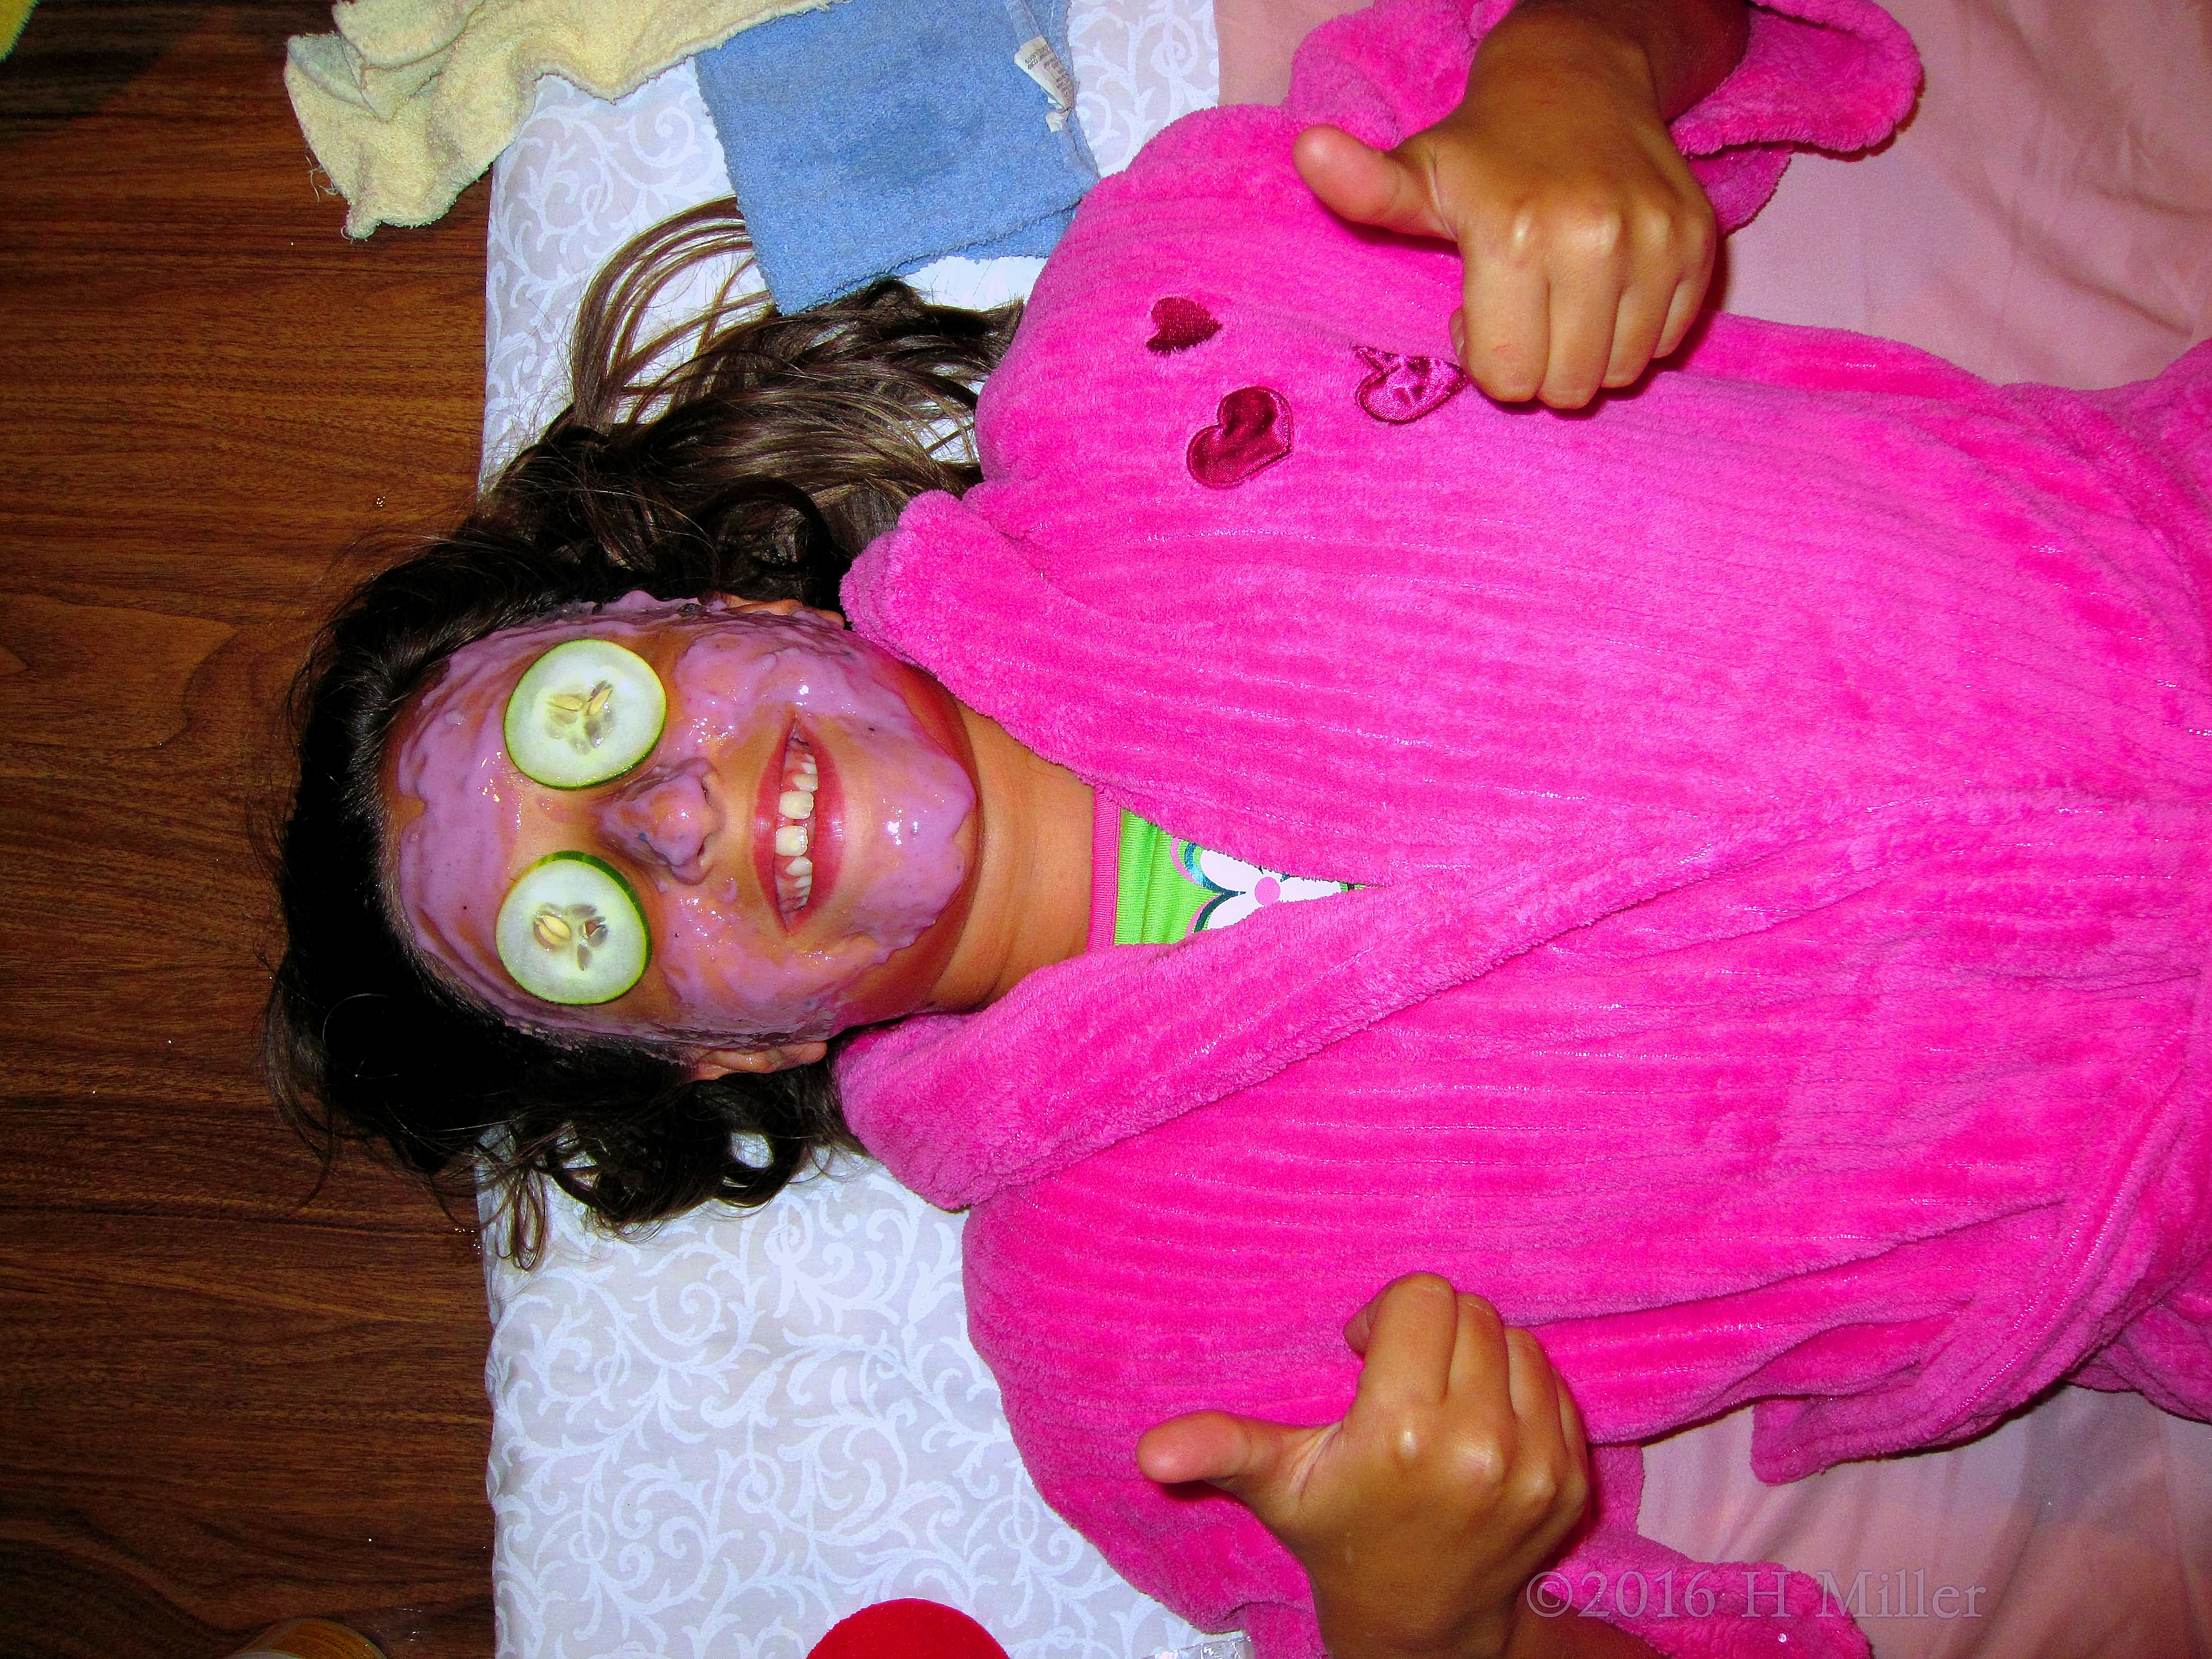 She's Loving The Refreshing Homemade Blueberry Face Mask 